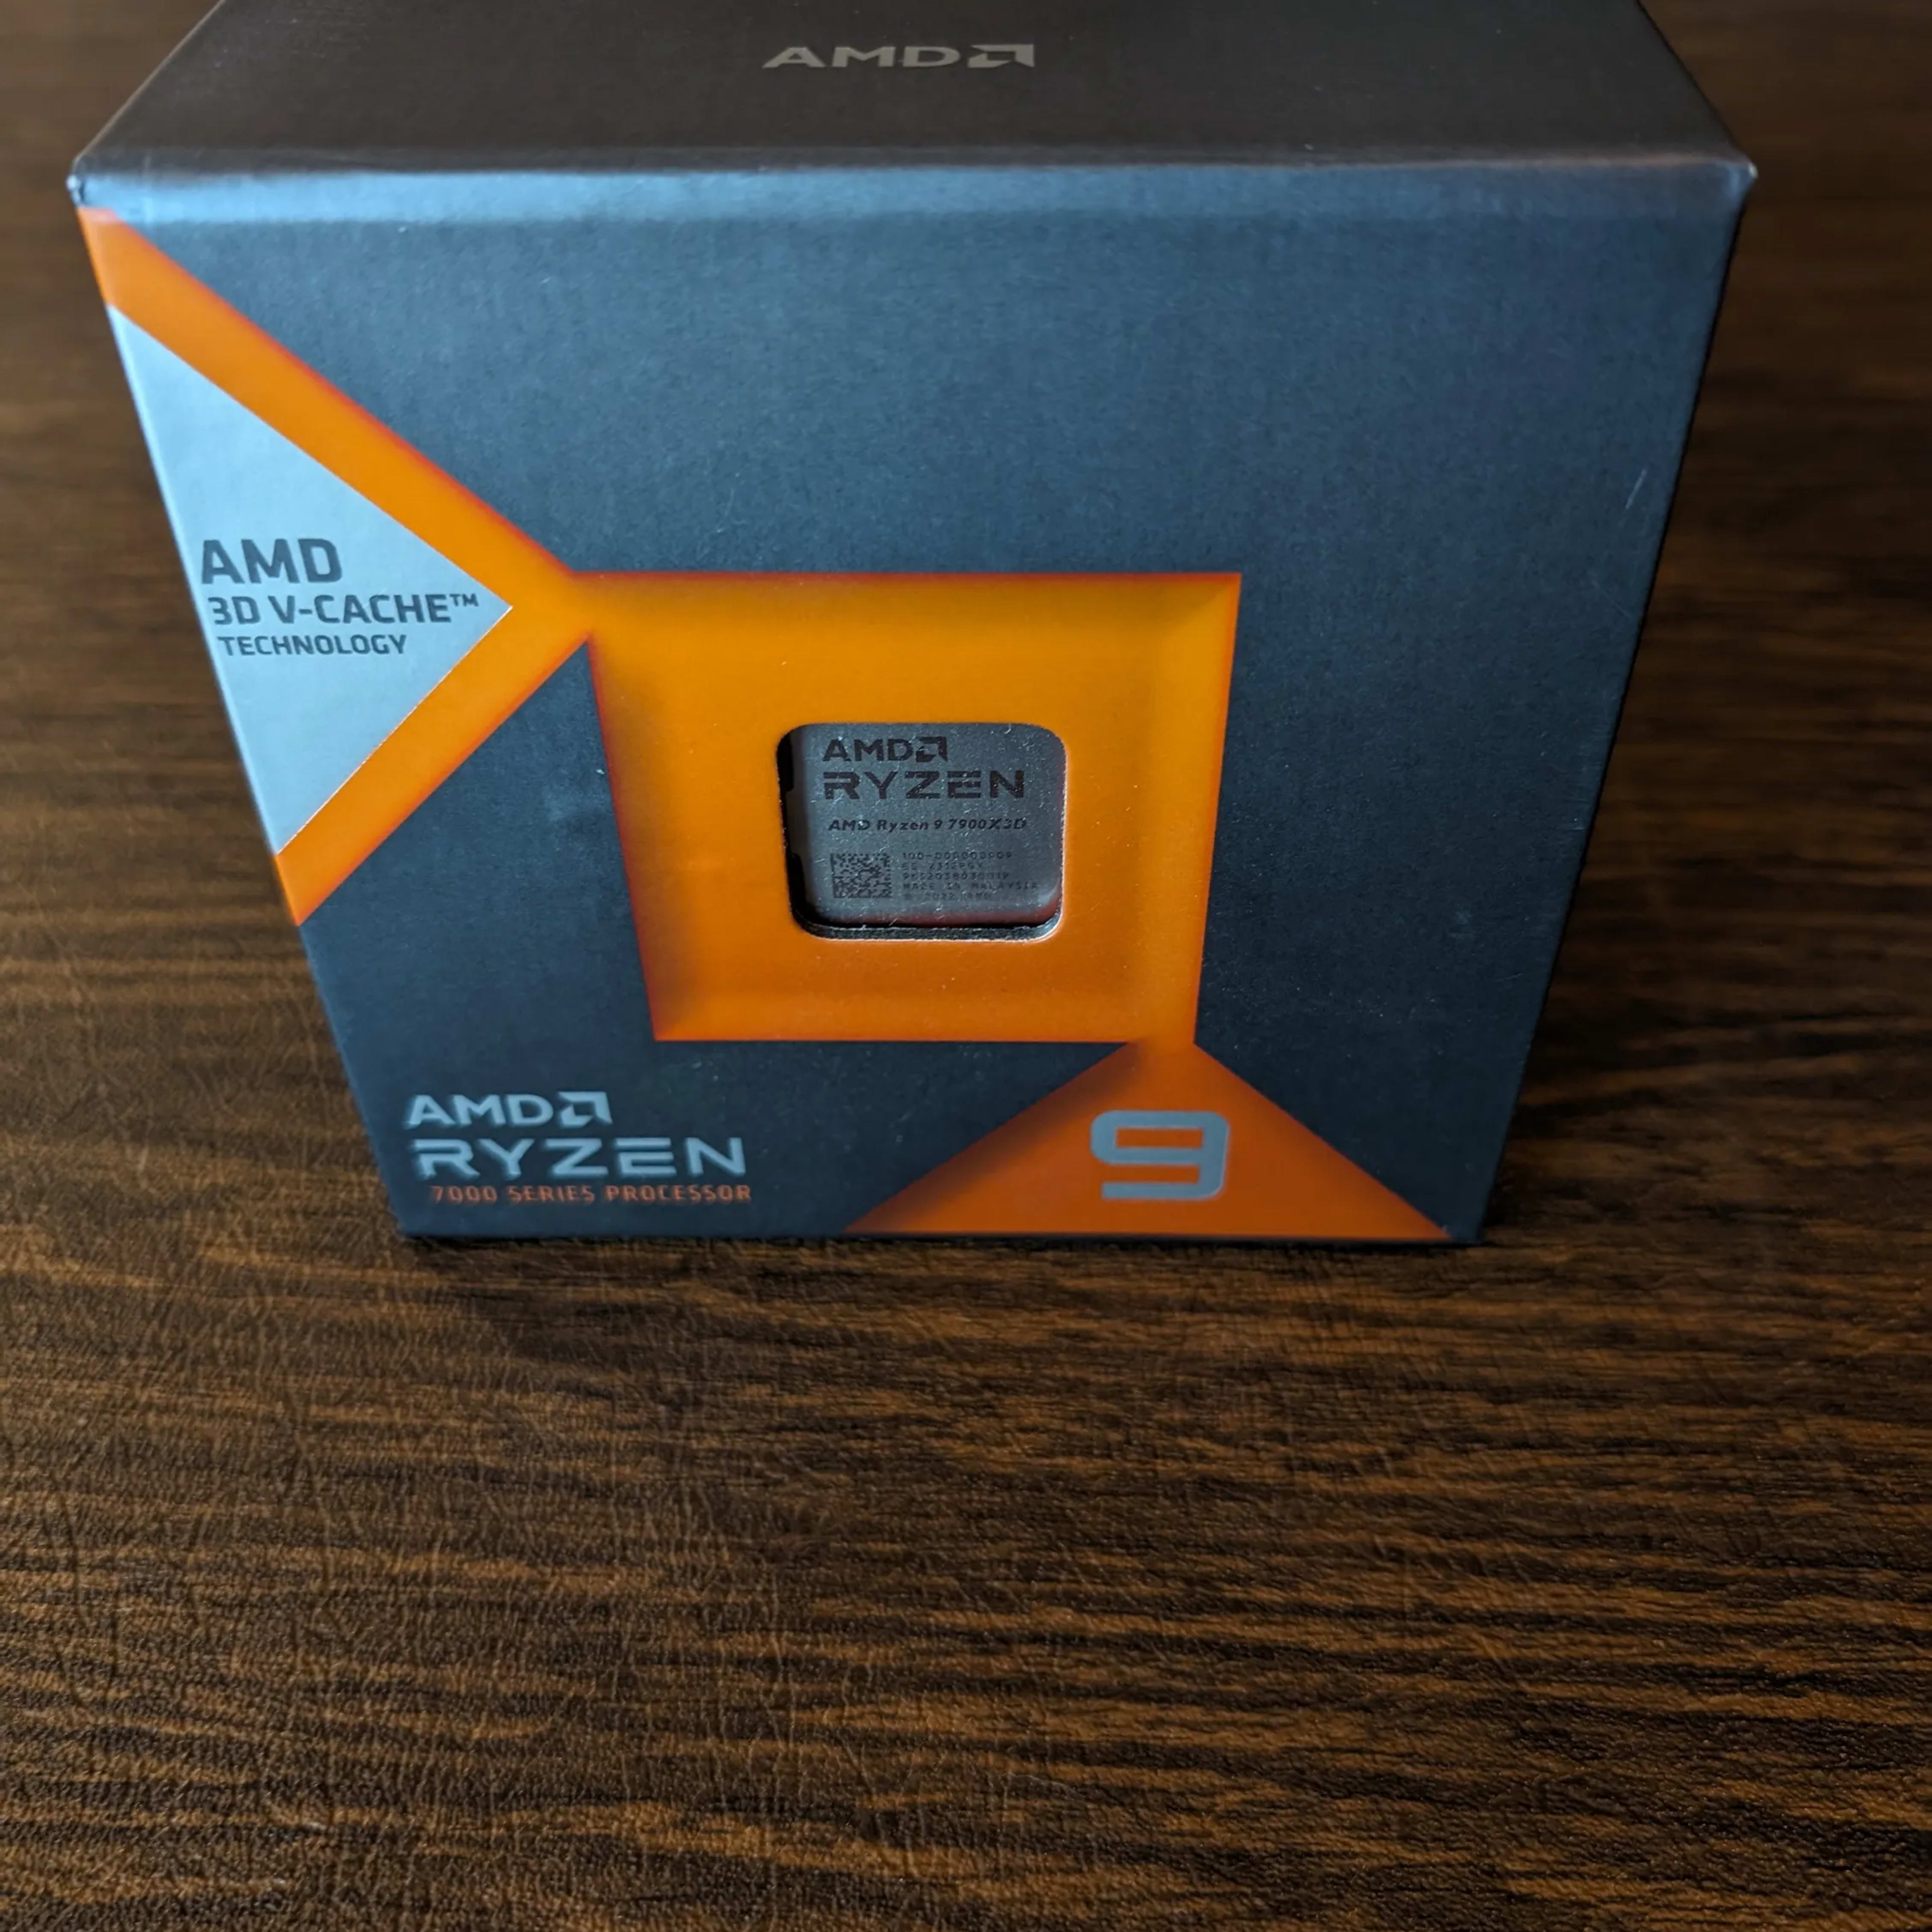 AMD Ryzen 9 7900X3D 12-Core 4.4 GHz Socket AM5 CPU - Brand New/Sealed